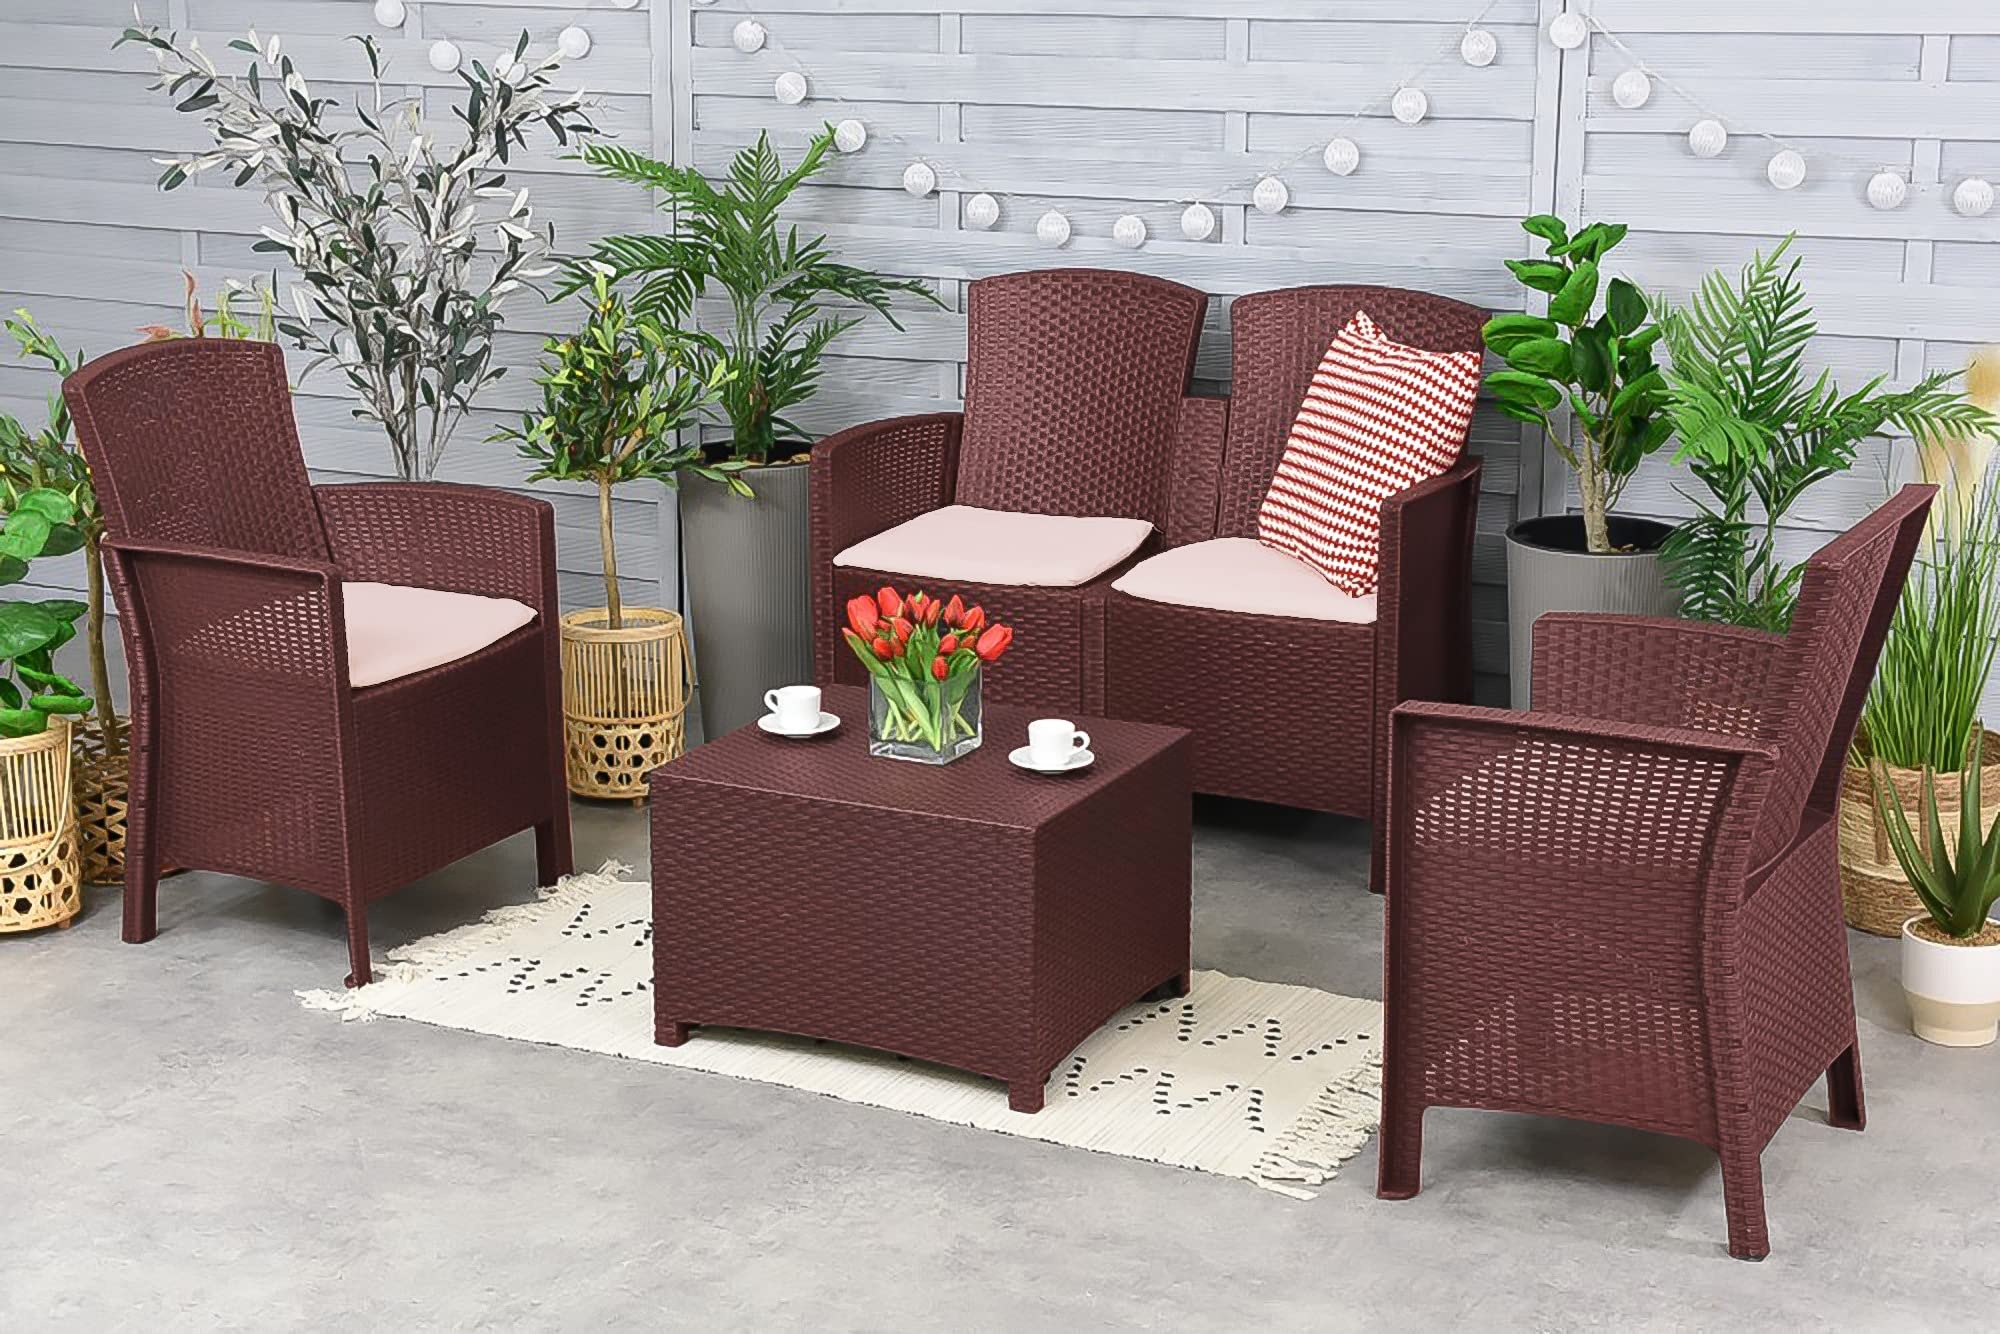 Dmora Urano-Lounge, Gartenmöbel-Set mit Kissen, für den Innen-und Außenbereich, 100% Made in Italy, Braun